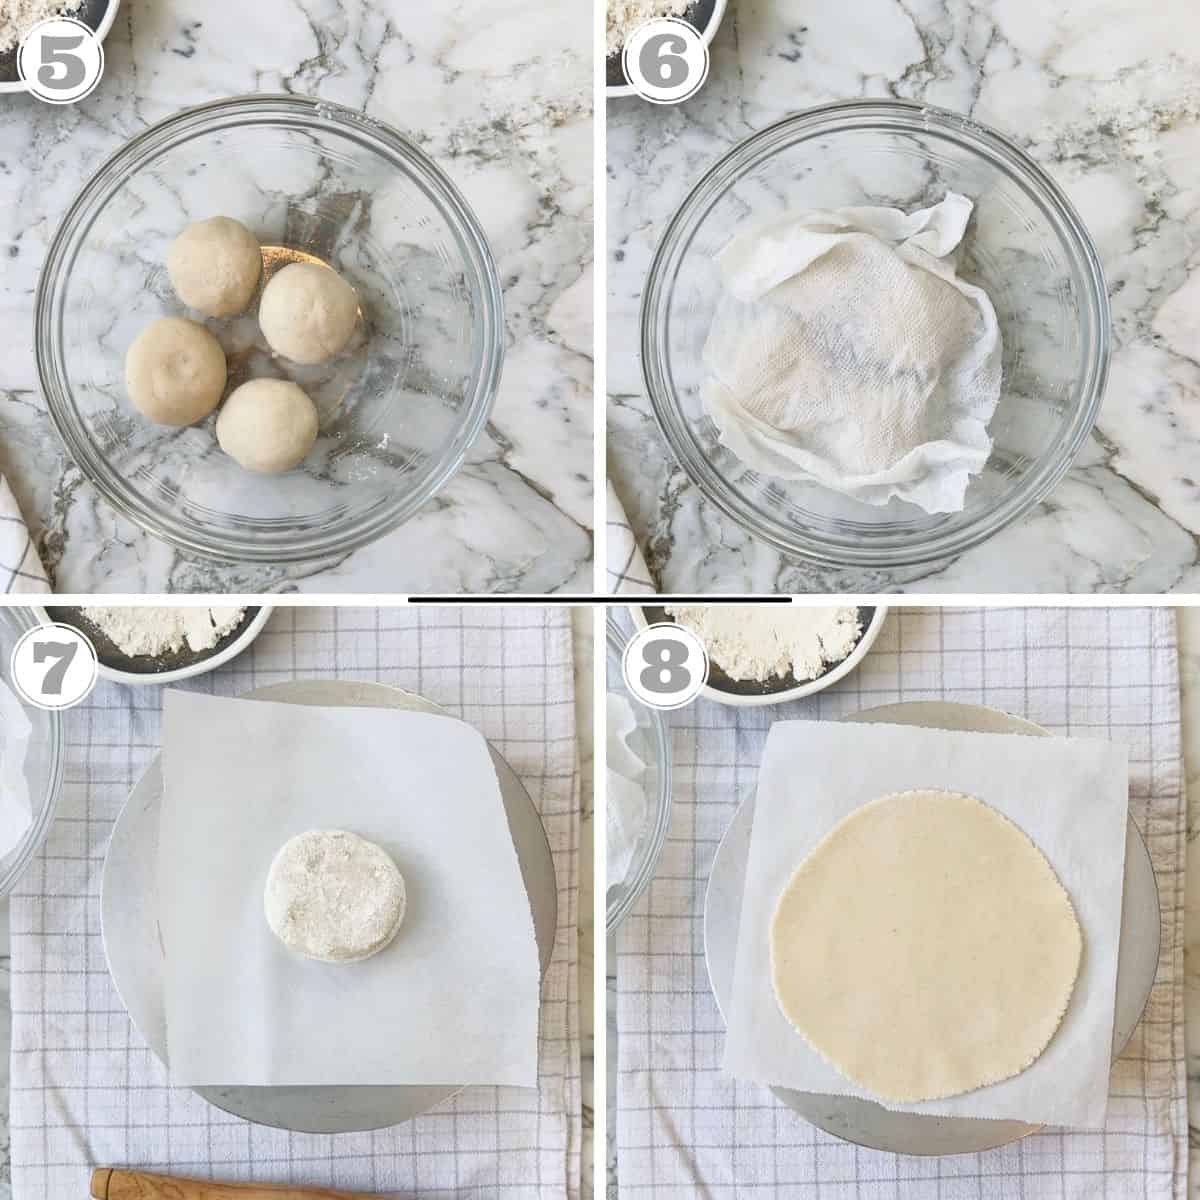 फोटो पांच से आठ में दिखा रहा है कि ज्वार की रोटी कैसे बनाई जाती है 